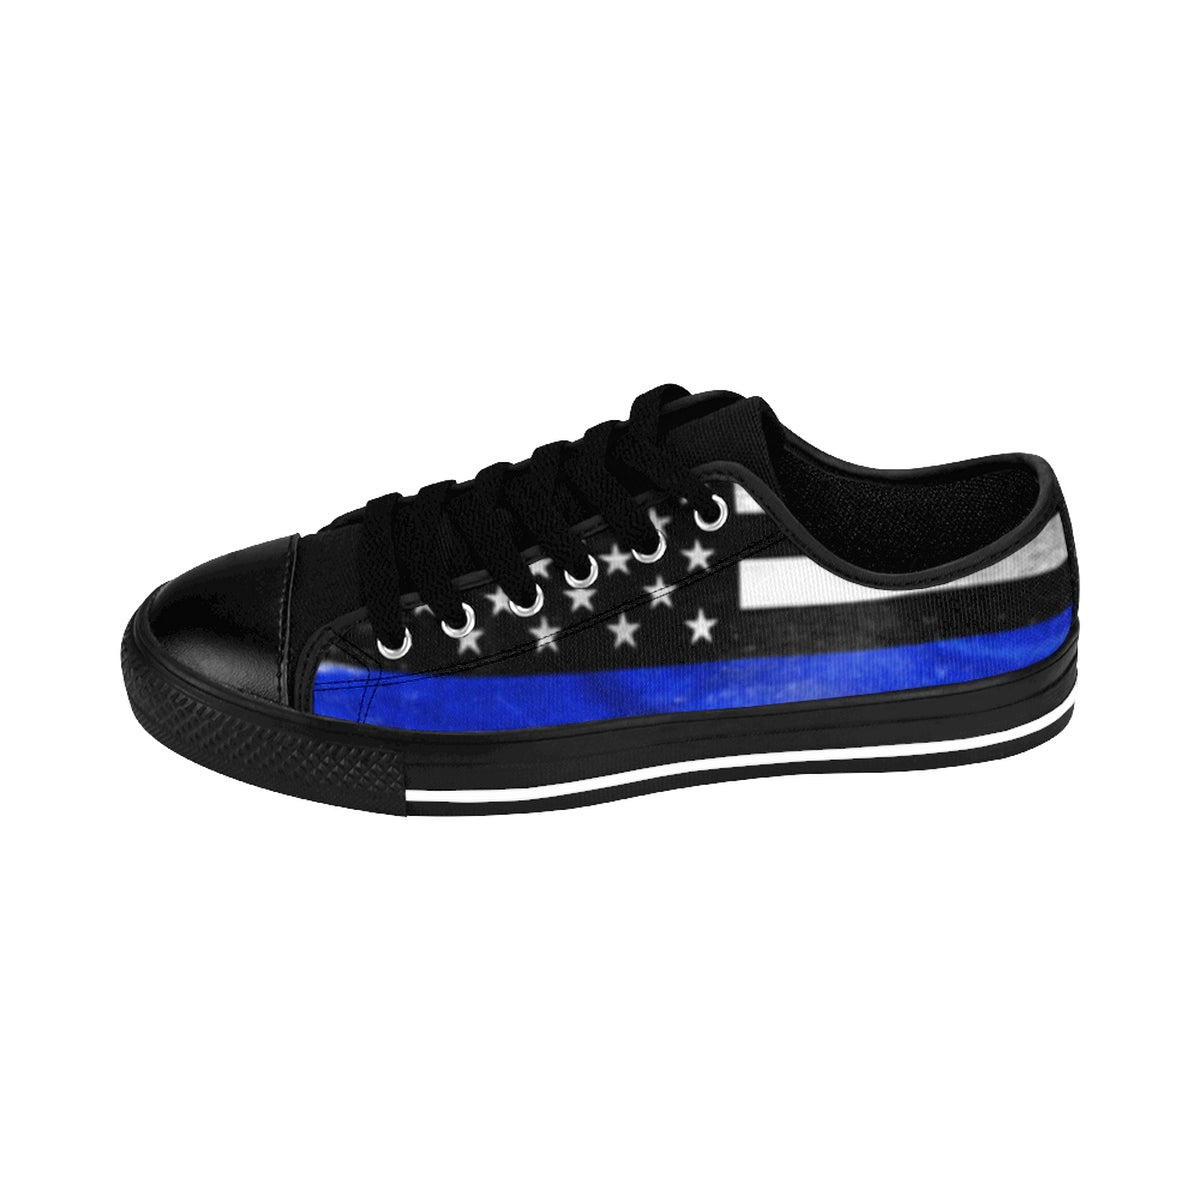 blue line tennis shoes